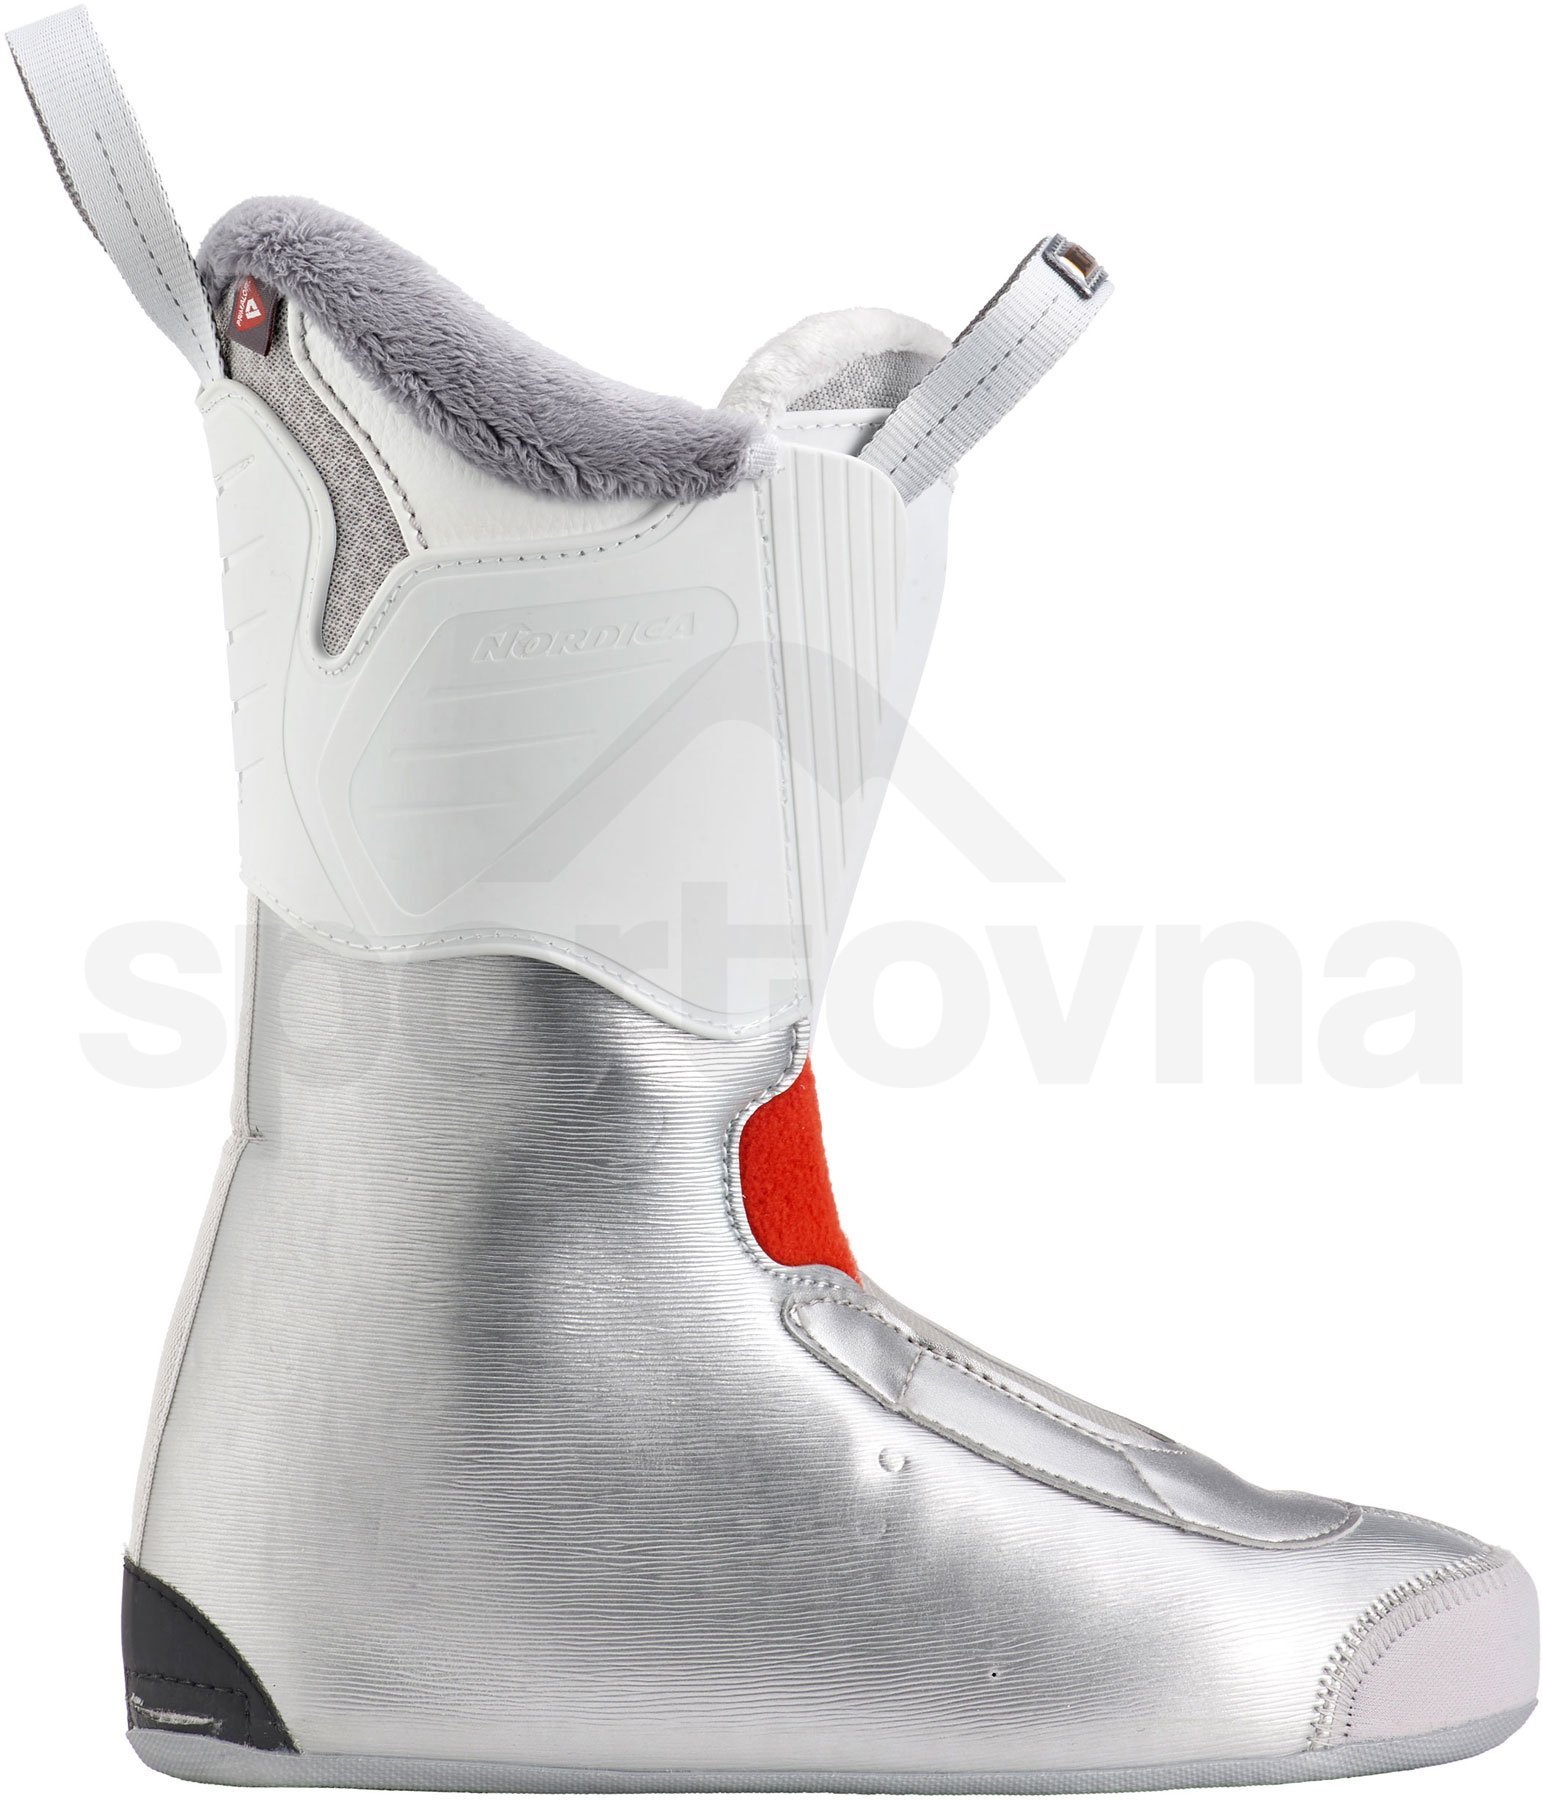 Lyžařské boty Nordica Speed 85W - bílá